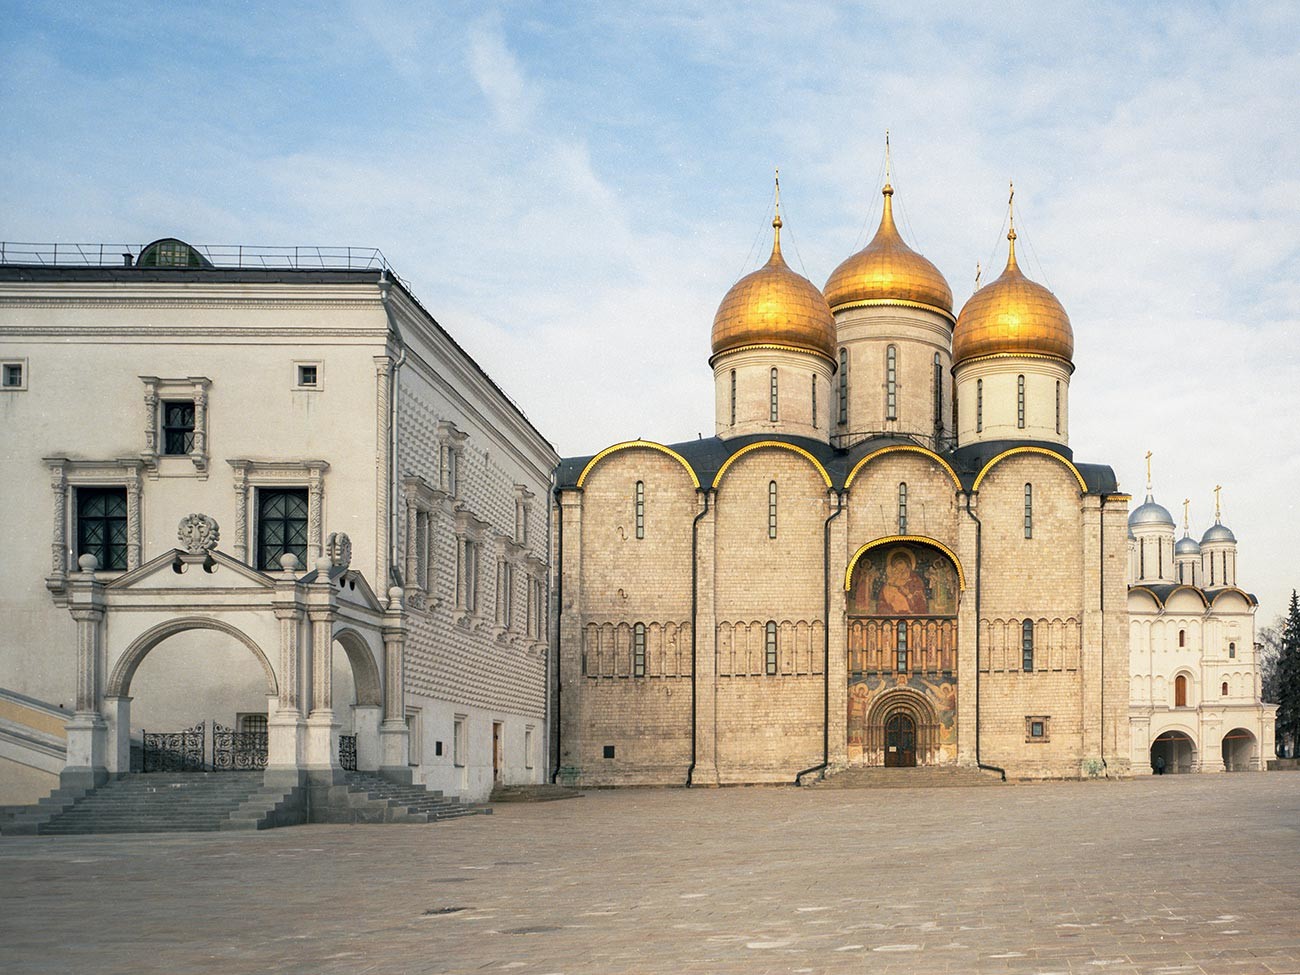 Московски кремљ, друштвено-политички, духовни, историјски и уметнички центар руске престонице. Грановита палата и Успенски храм.